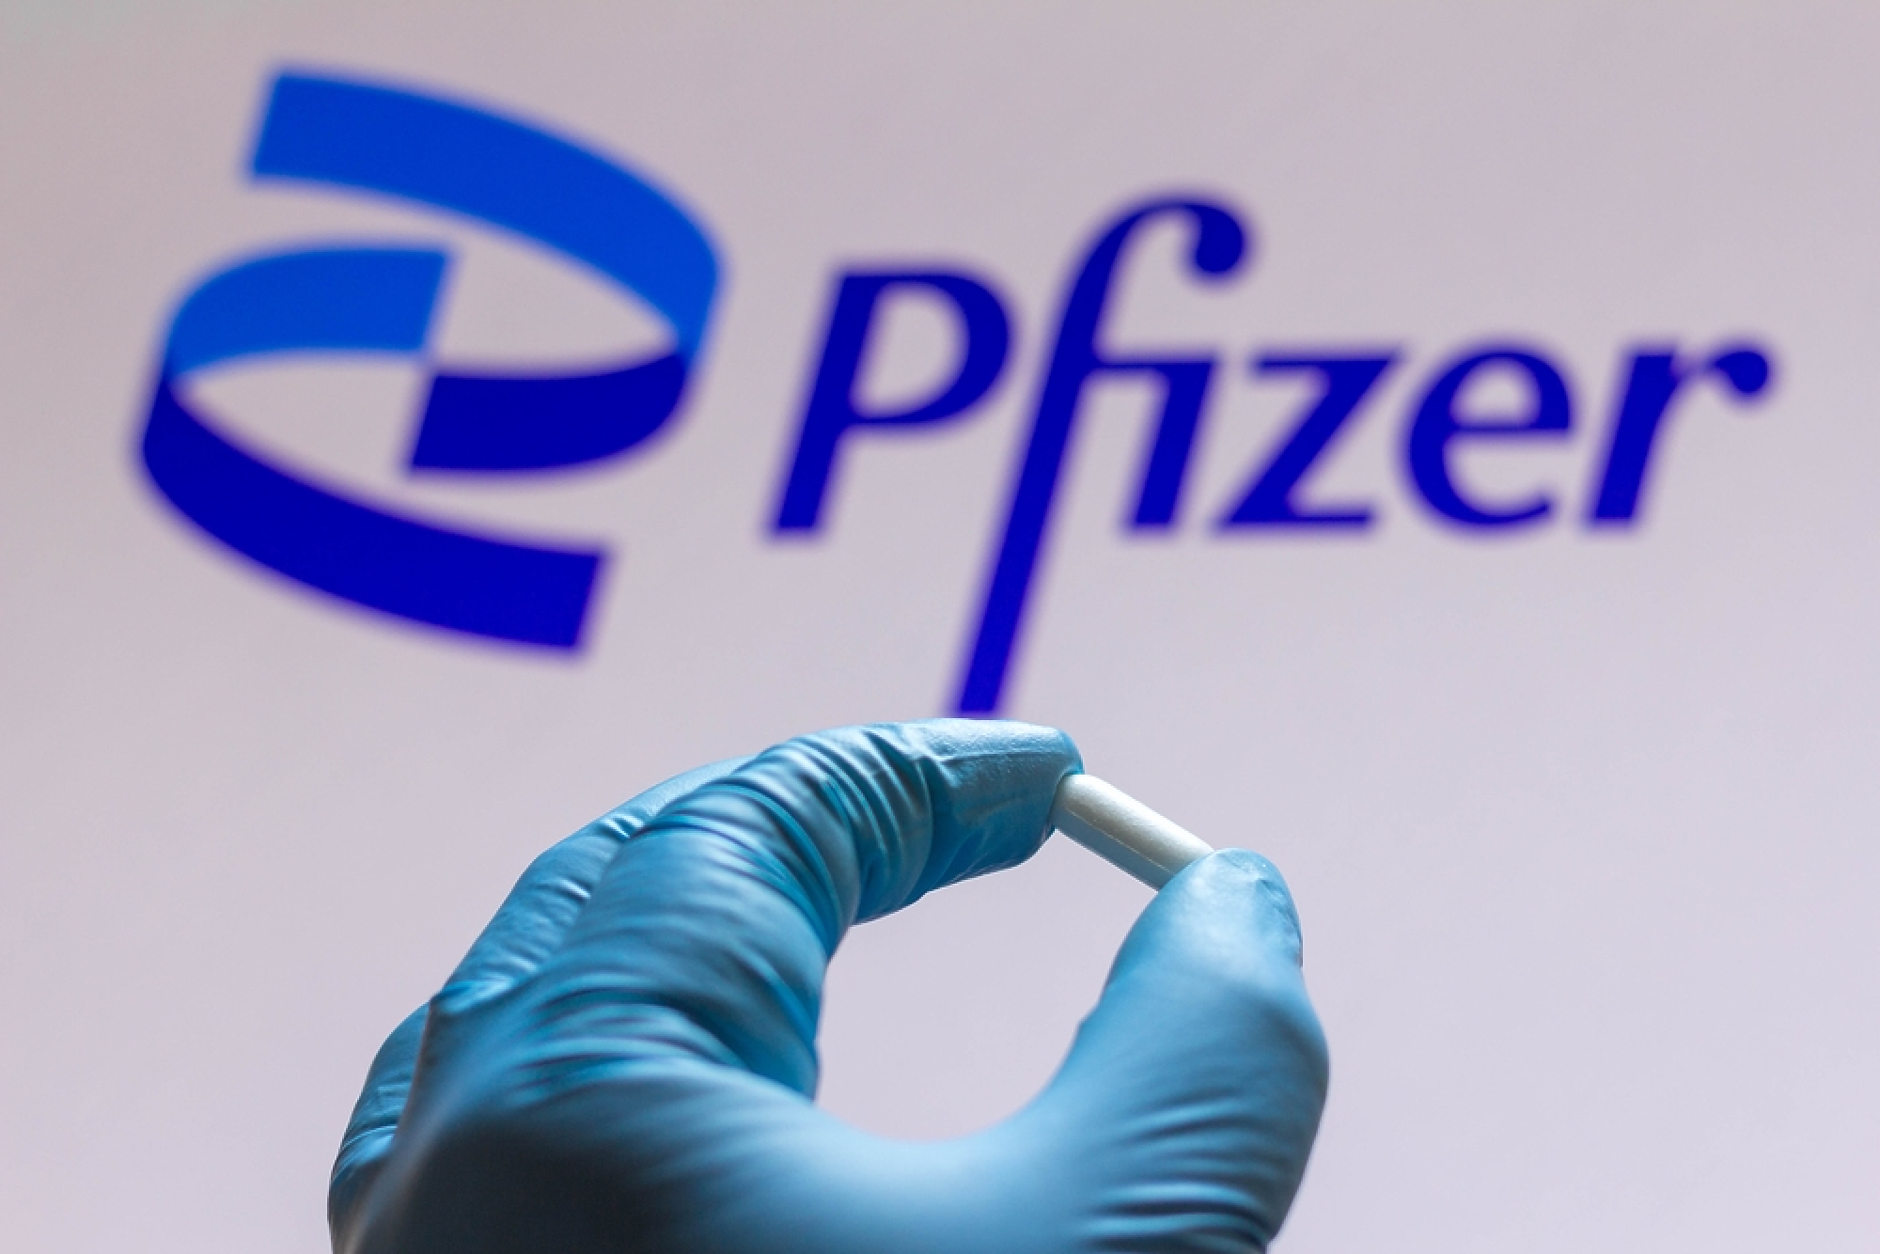  Pfizer постигна споразумение за придобиването на биотехнологичната компания  Seagen за 43 млрд. долара